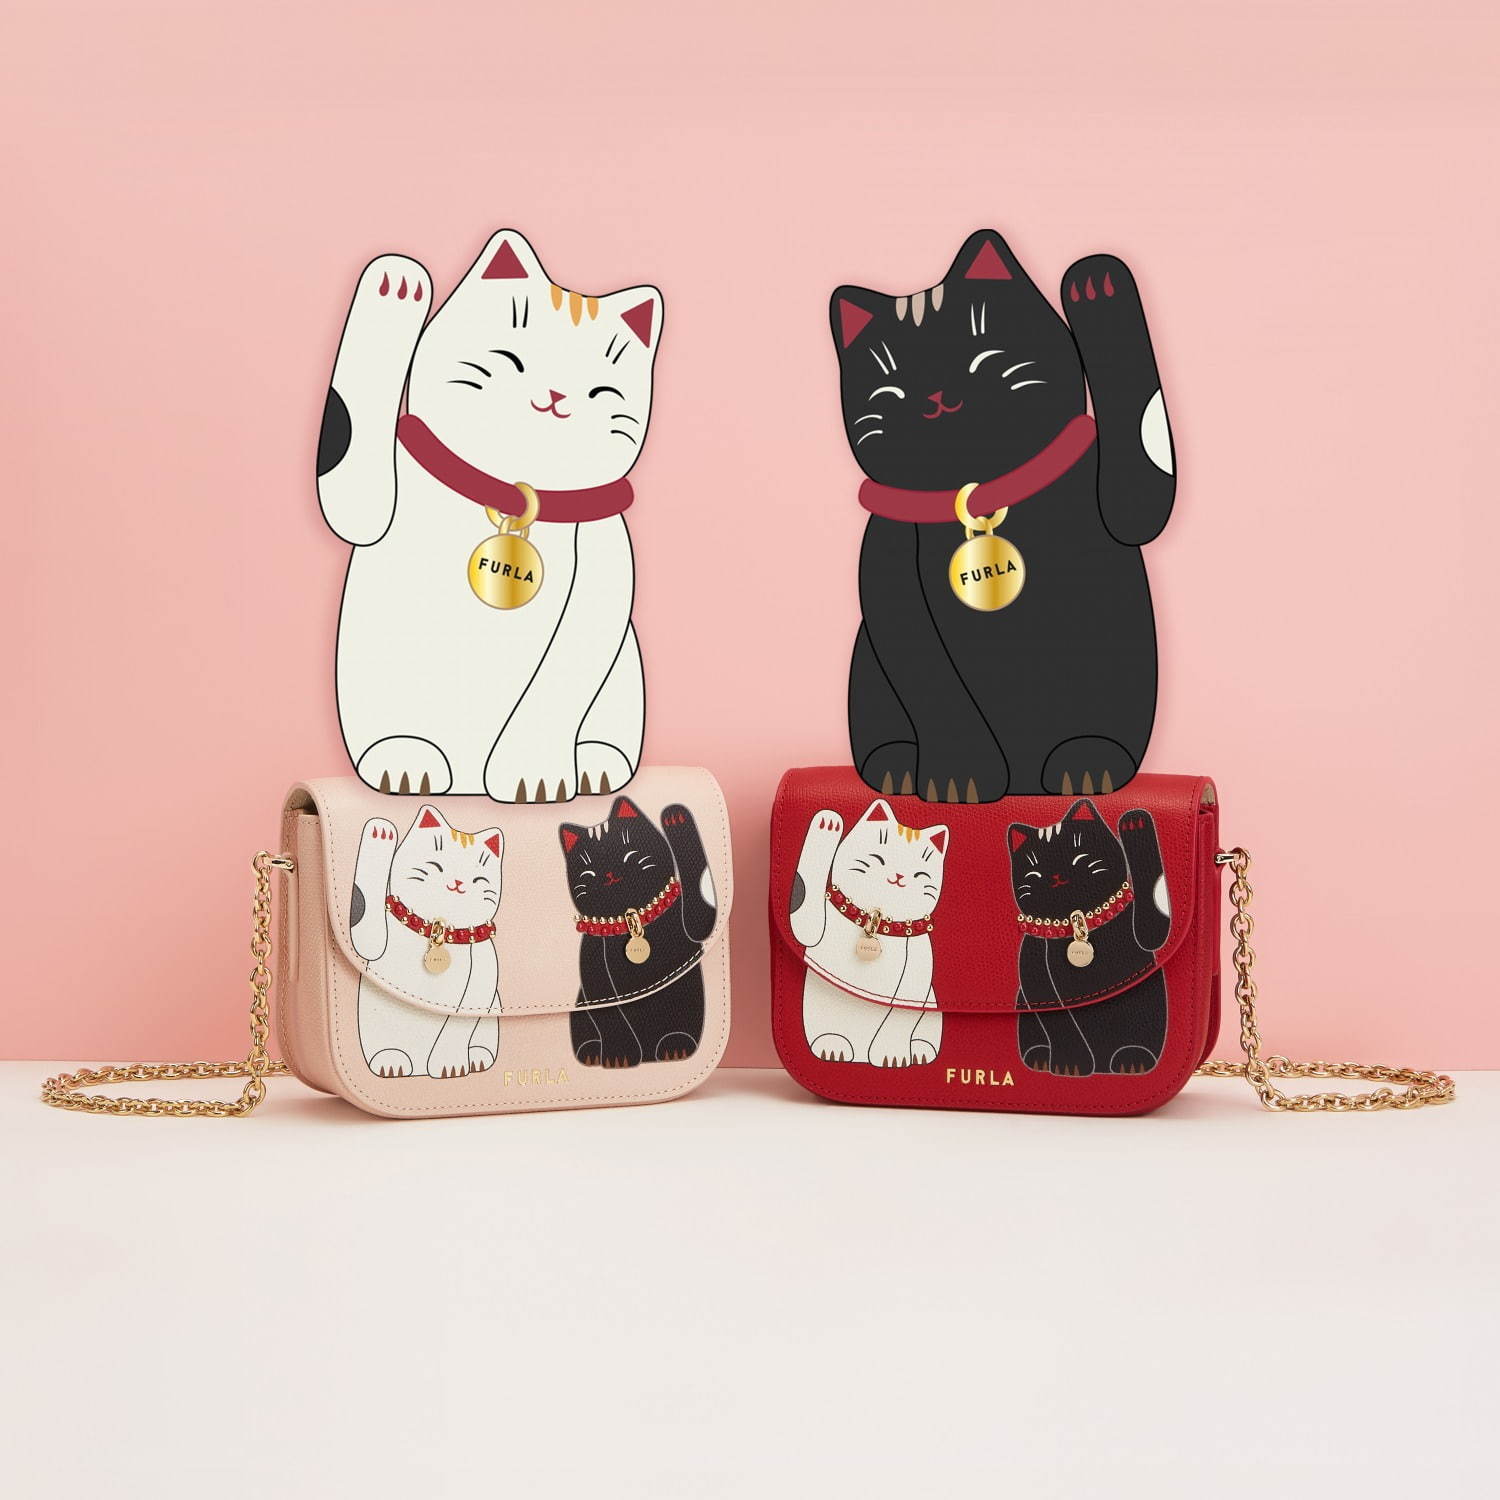 フルラ“開運”の象徴「招き猫」チェーンバッグや財布、ラッキーカラー